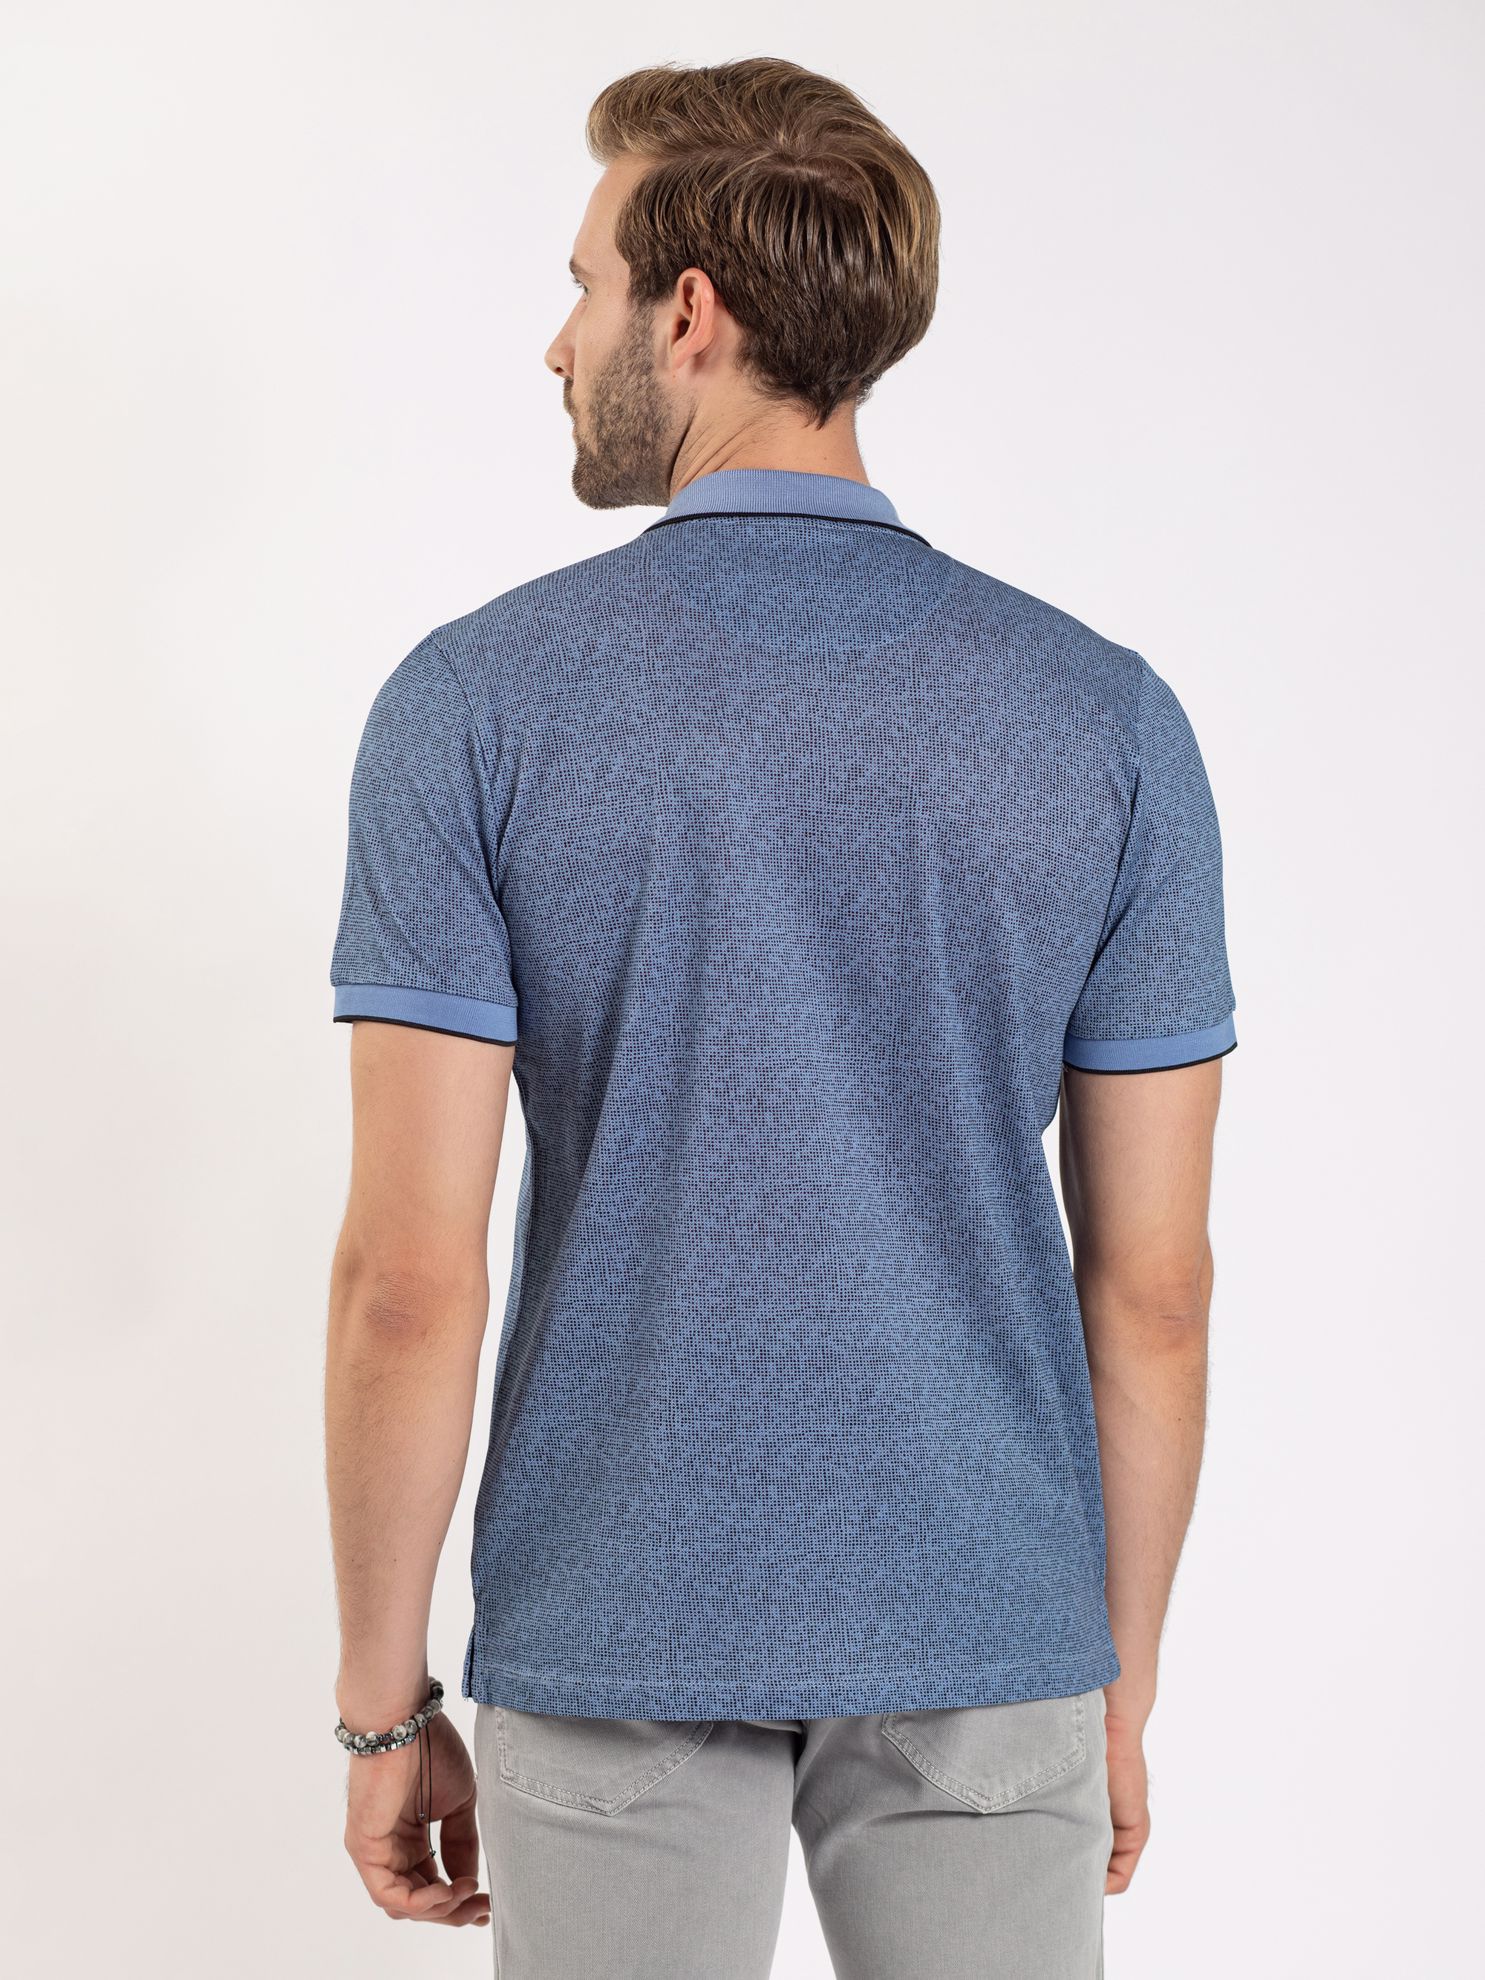 Karaca Erkek Slim Fit Polo Yaka Tişört-Mavi. ürün görseli